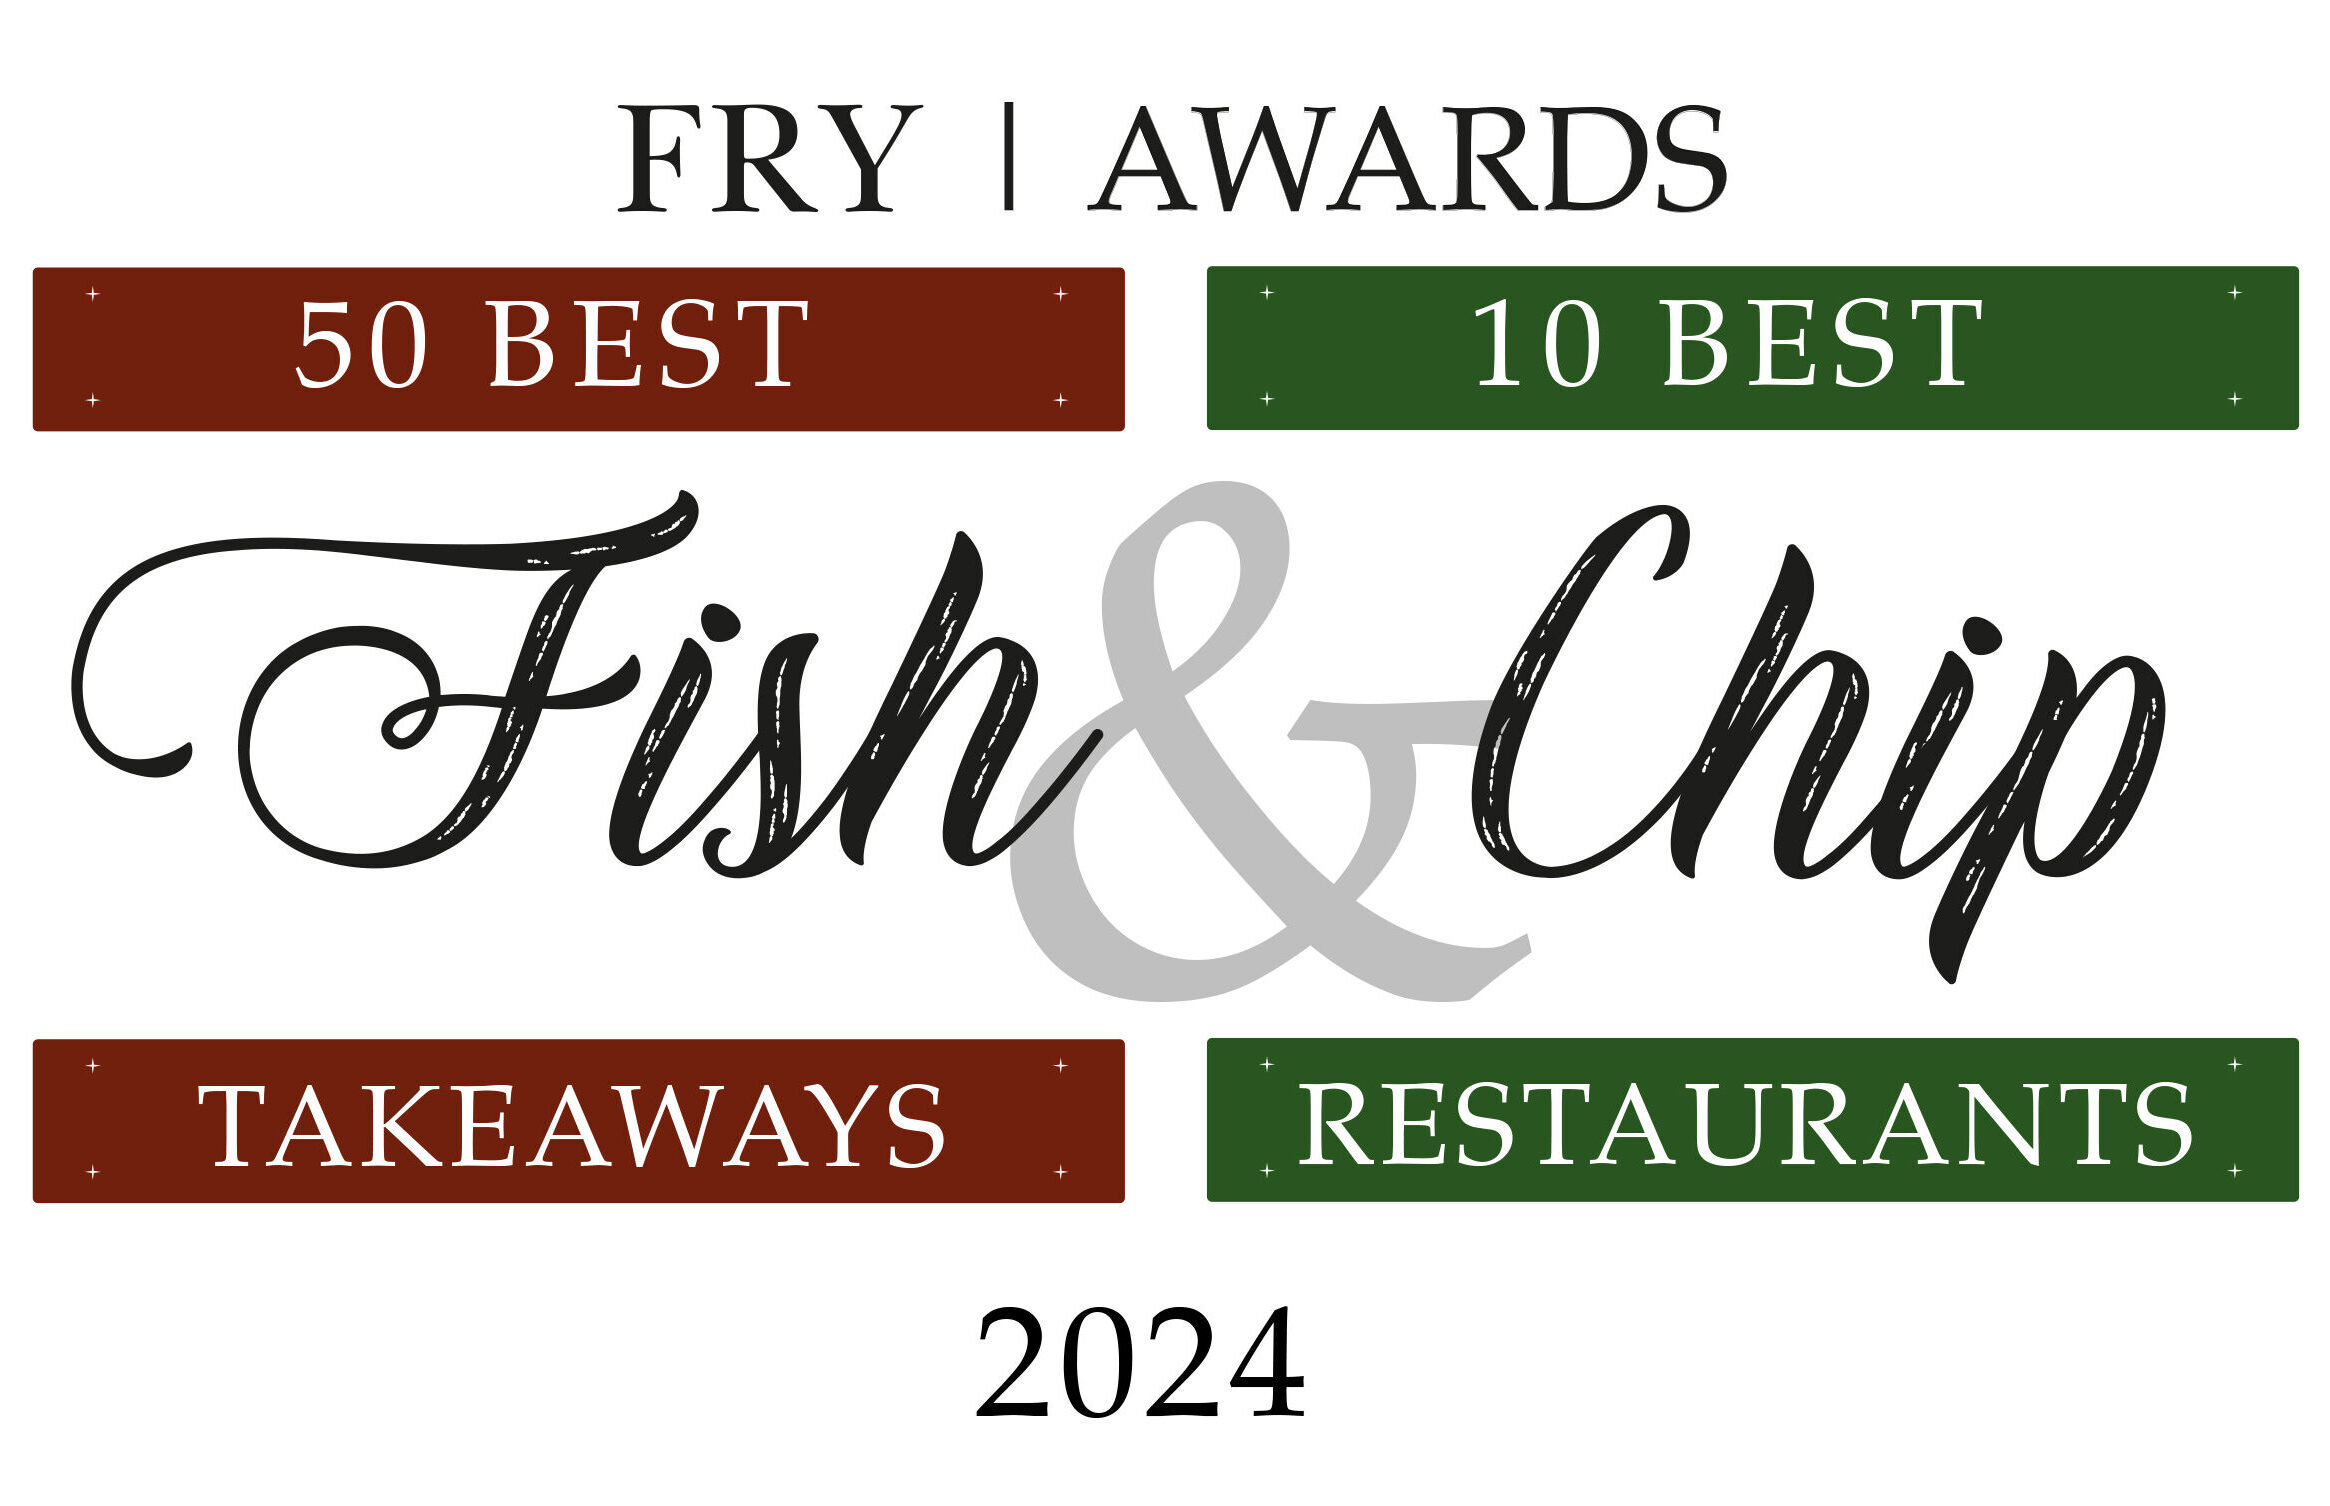 Fry Awards